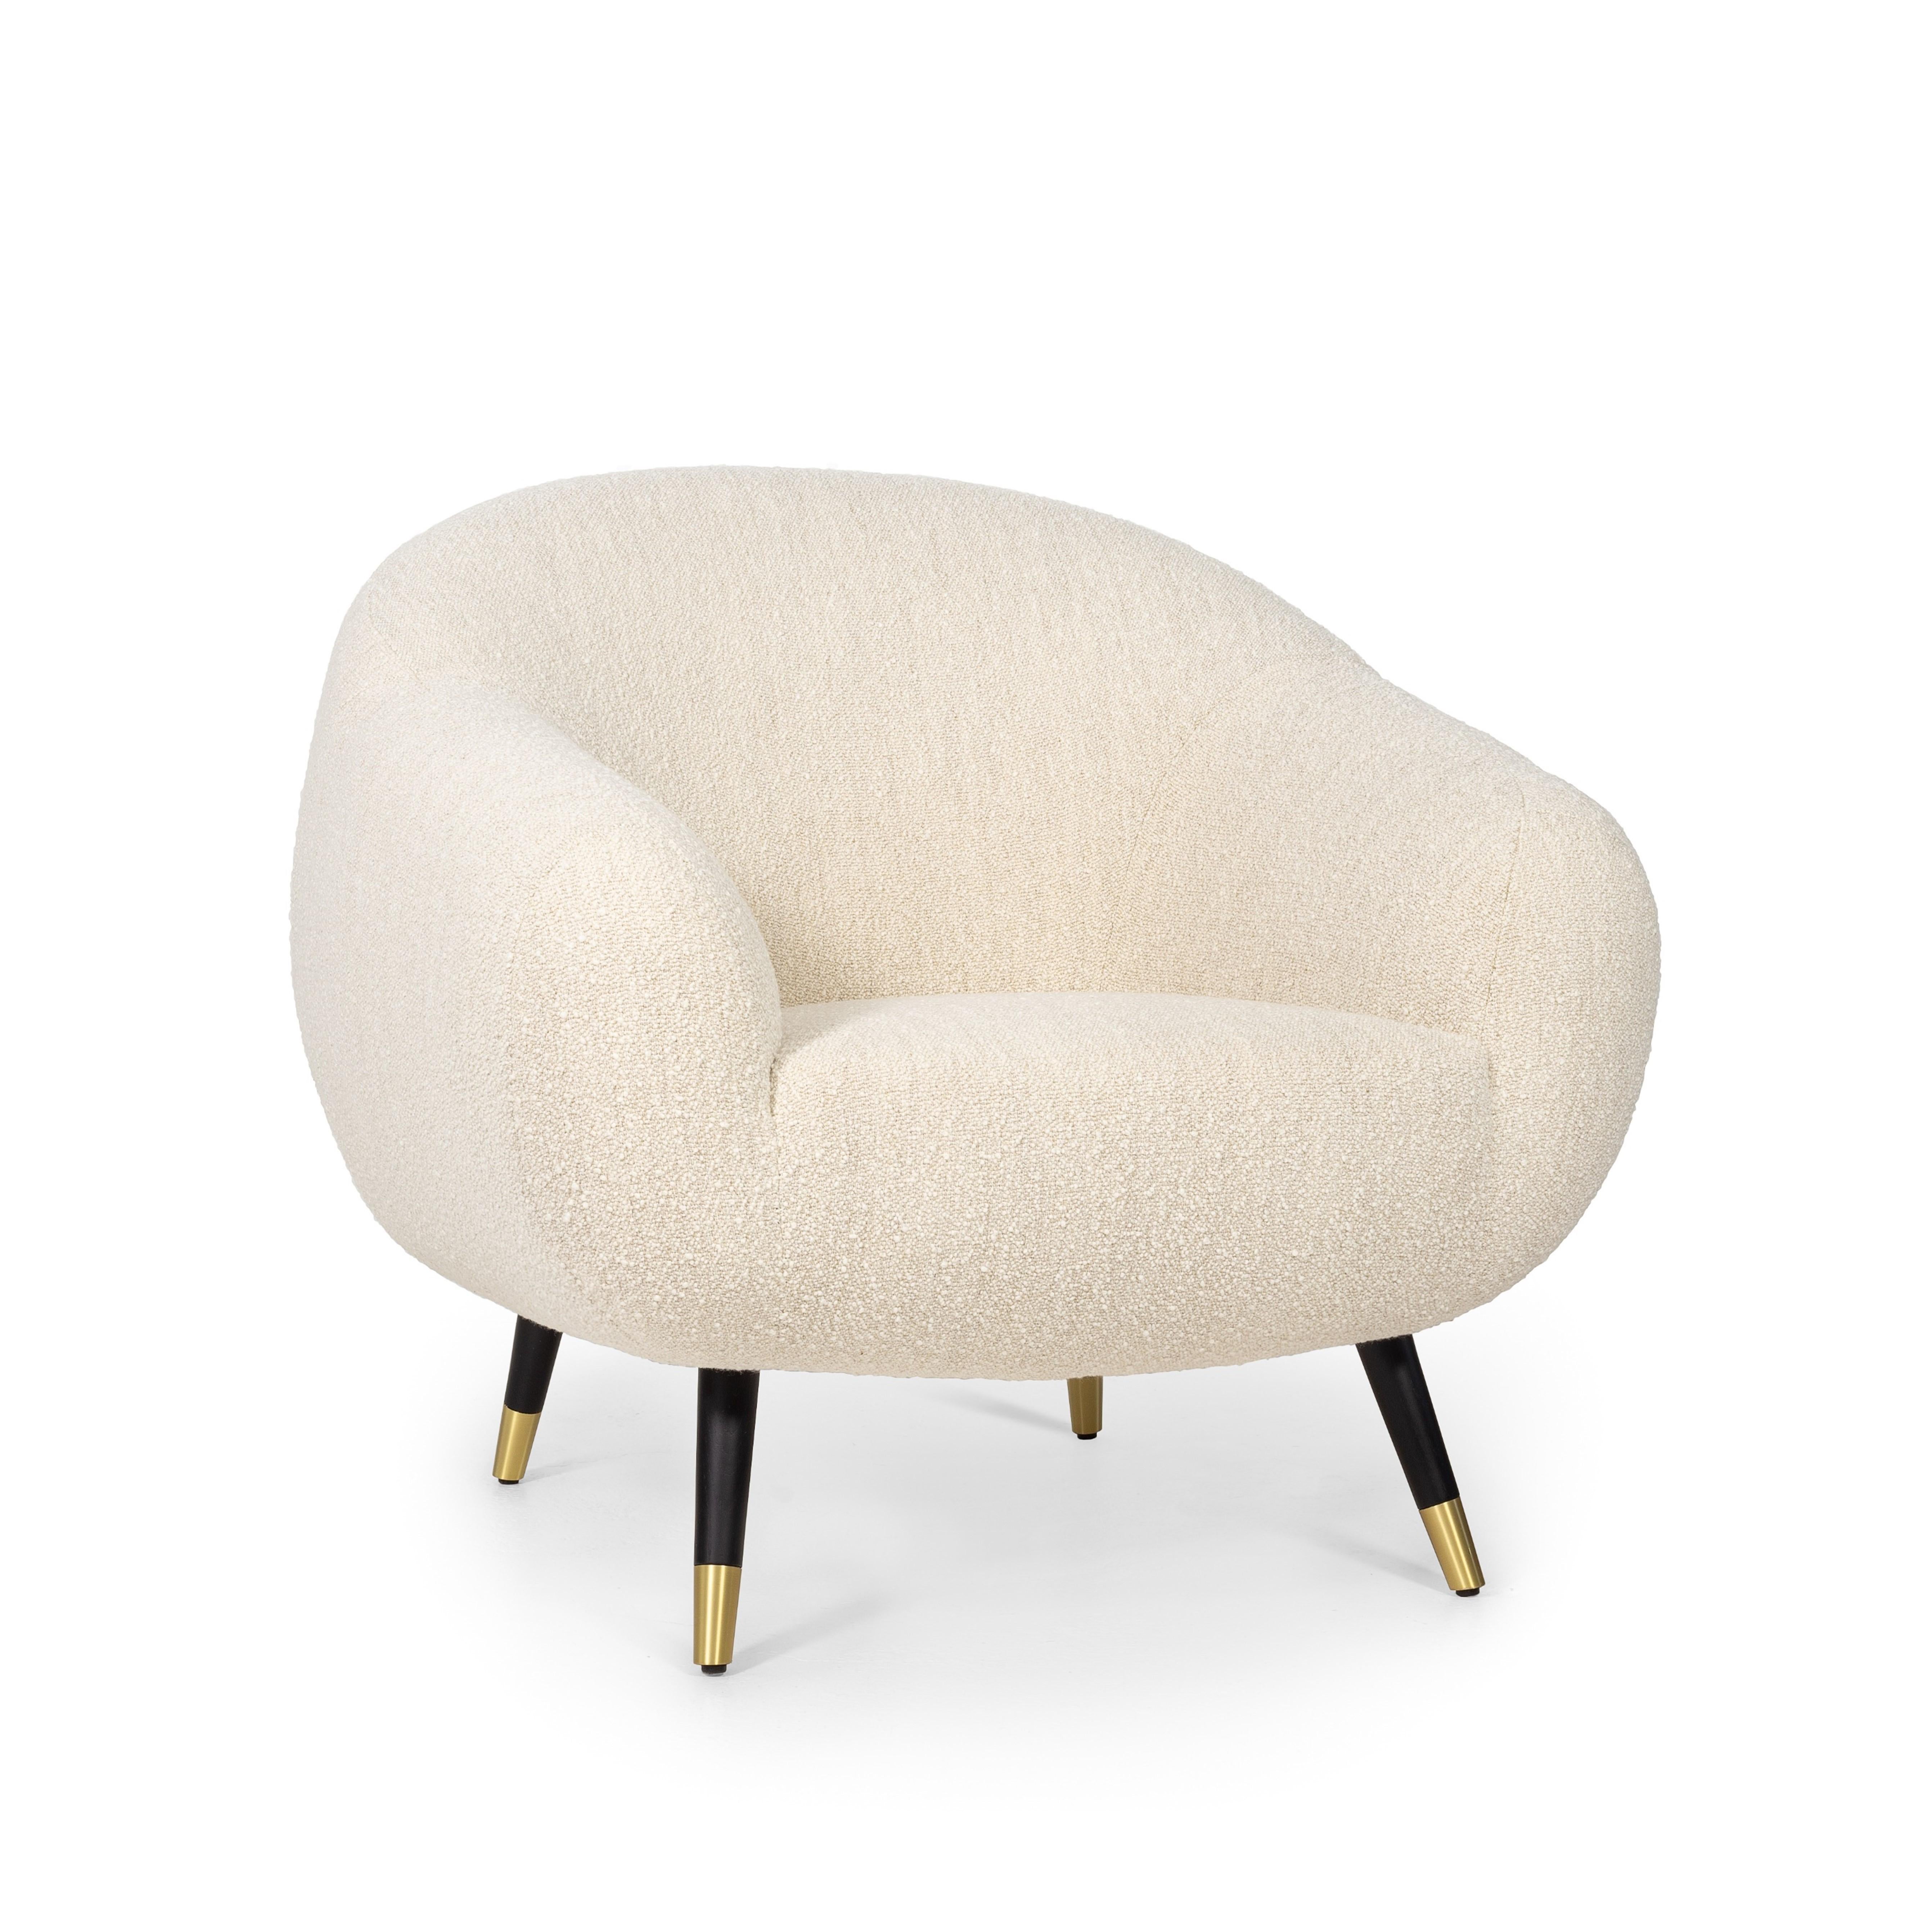 Gagnant d'or au concours Muse Design Awards 2022

Le fauteuil Niemeyer porte le nom de l'architecte brésilien Oscar Niemeyer, dont l'architecture s'est répandue comme une poésie sculpturale dans l'histoire de l'humanité.
Les lignes arrondies du